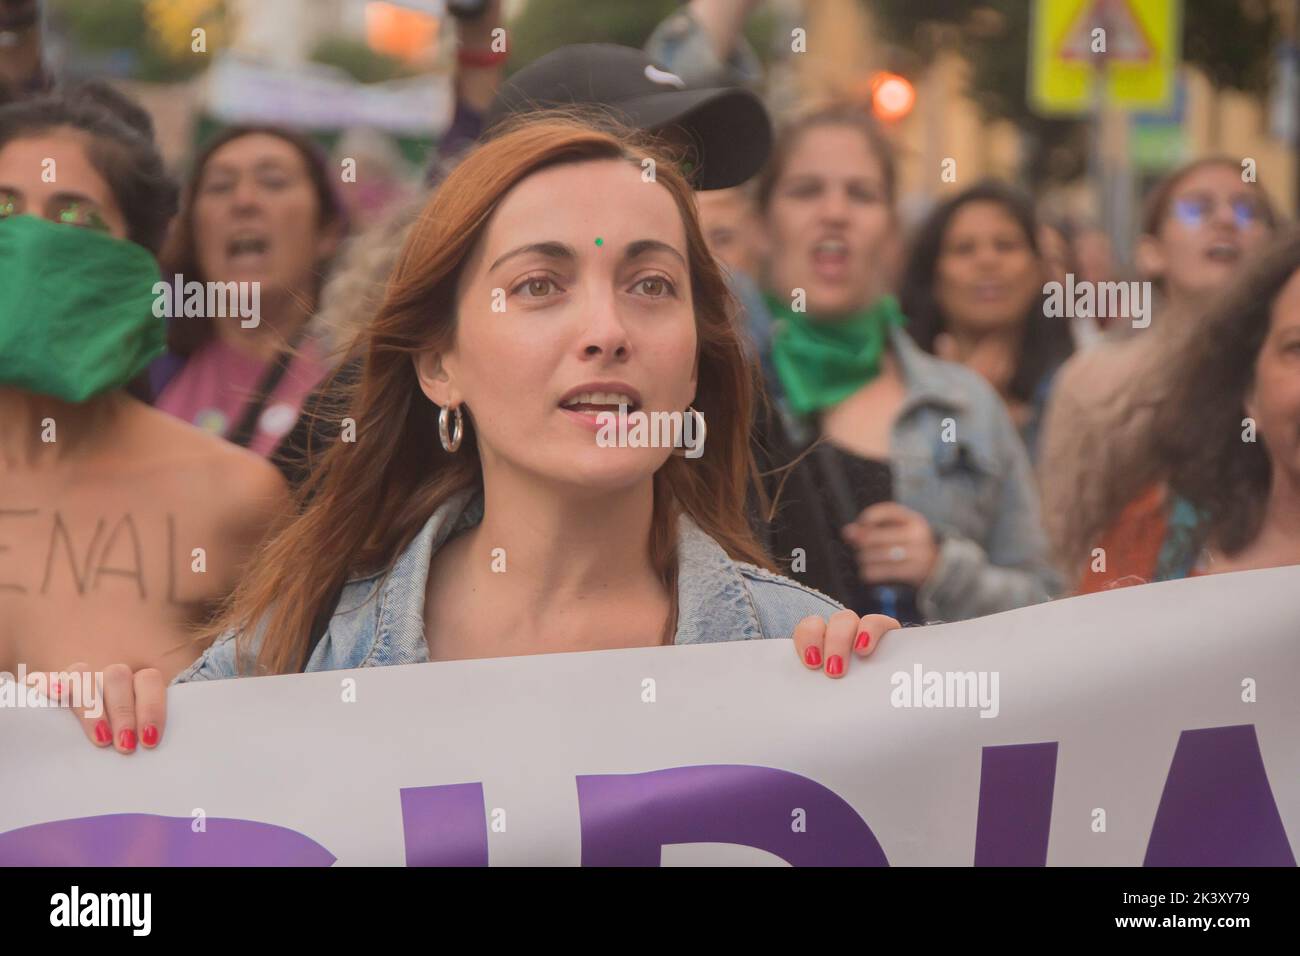 Miembros del movimiento feminista de Madrid protestan a favor del aborto libre con motivo del Día Mundial de Acción por el Aborto Legal, Seguro y Accesible. La manifestación internacional en Madrid ha tenido de la Glorieta de San Bernardo al Ministerio de Justicia. El 28 de septiembre se convirtió en 1990 en el Día Mundial de Acción por la Despenalización del Aborto. Esta propuesta es una de las conclusiones de la Reunión de Feministas Latinoamericanas celebrada en Buenos Aires, con el objetivo de asegurar que el aborto sea regulado como un derecho a frenar la mortalidad materna, los riesgos para la salud de las mujeres asociados Foto de stock